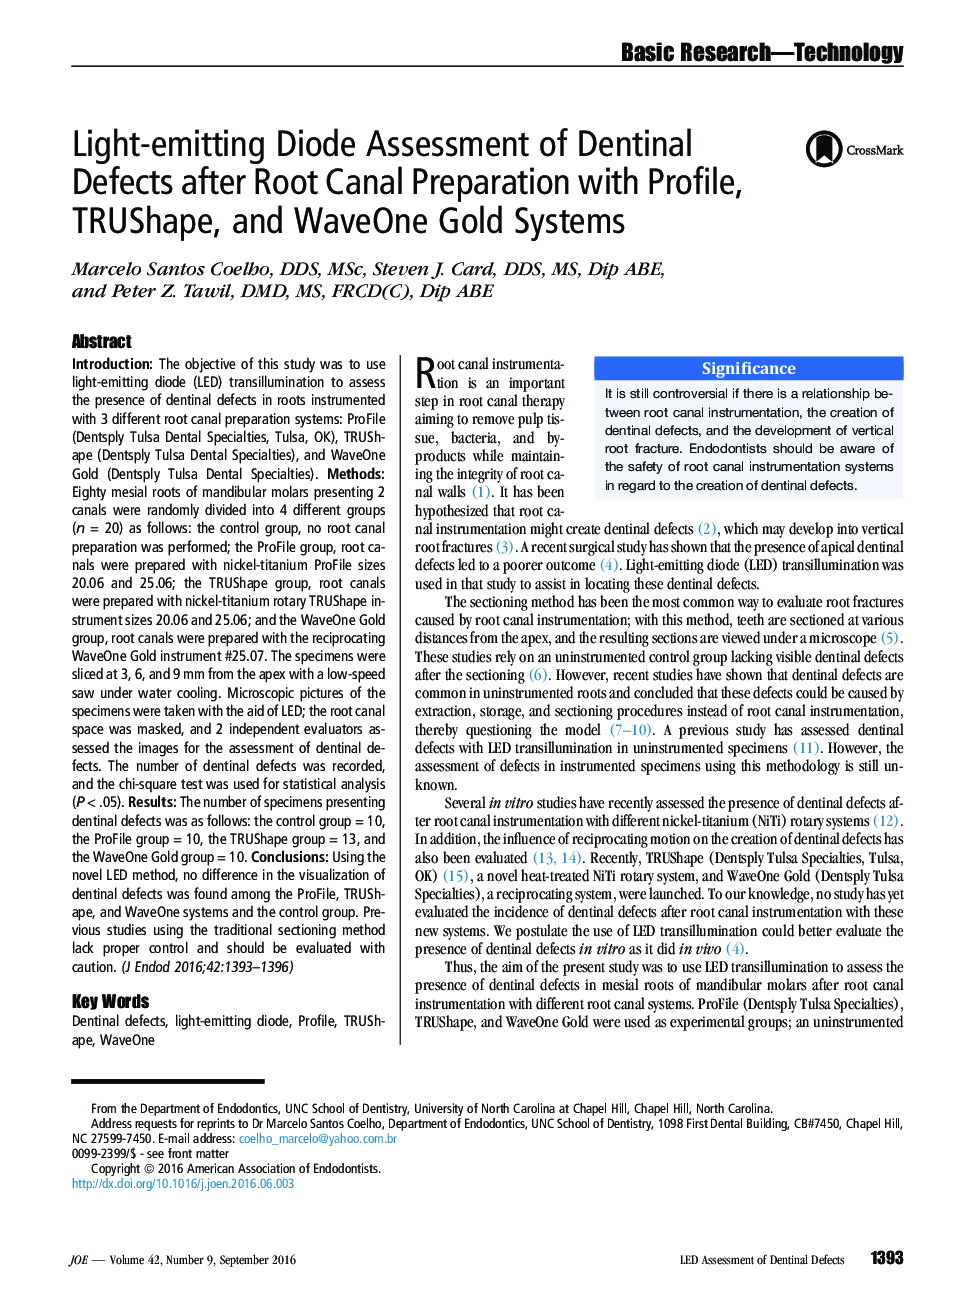 ارزیابی دیود ساطع نوری از نقص های دندانی پس از تهیه کانال ریشه با پروفیل، TRUShape و سیستم های WaveOne طلا